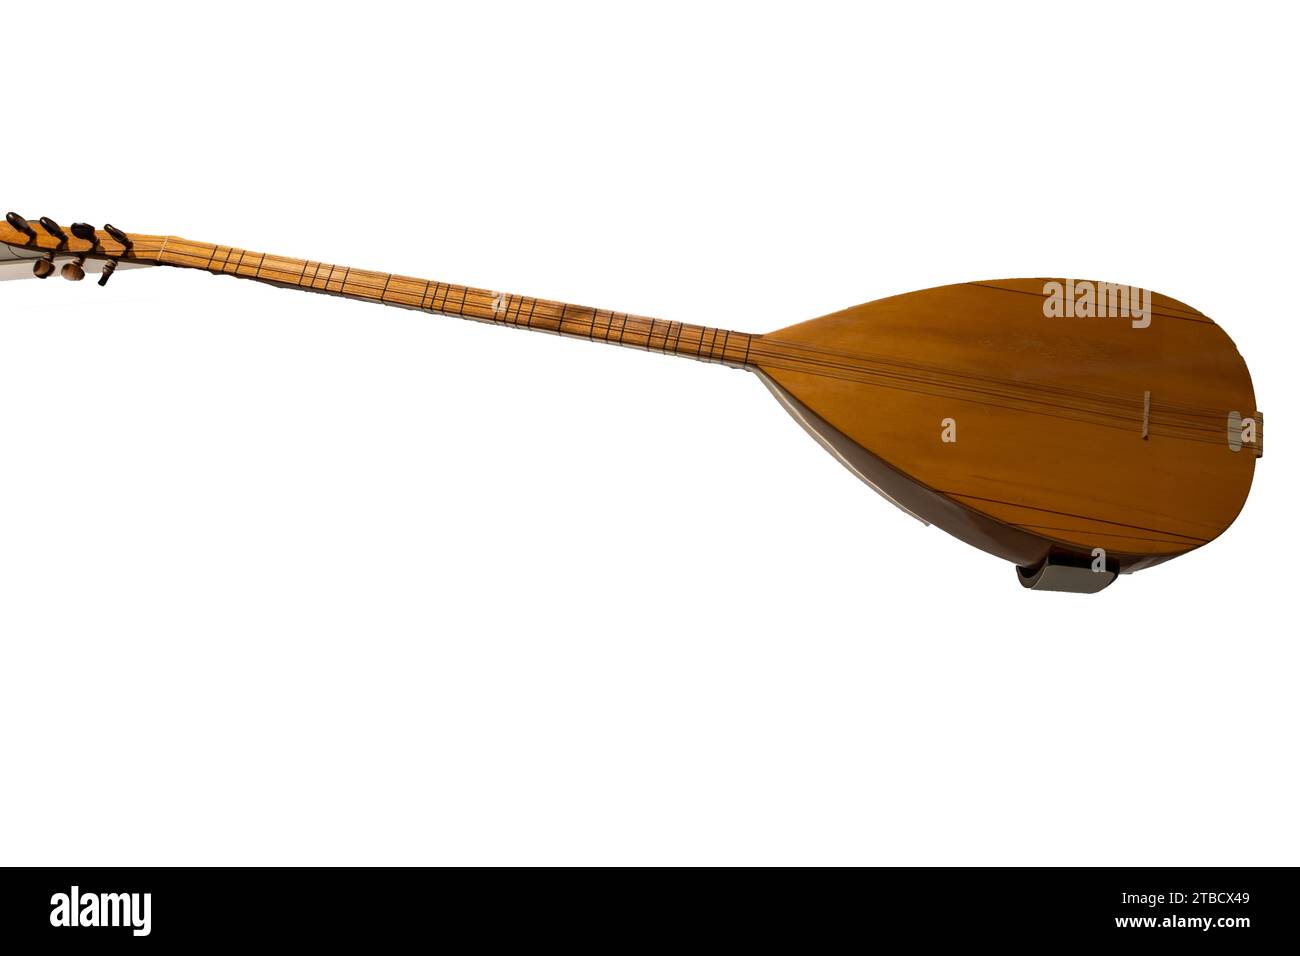 Baglama oder Saz ist ein Streichinstrument, das in der türkischen Volksmusik häufig verwendet wird. Isolierter weißer Hintergrund Stockfoto